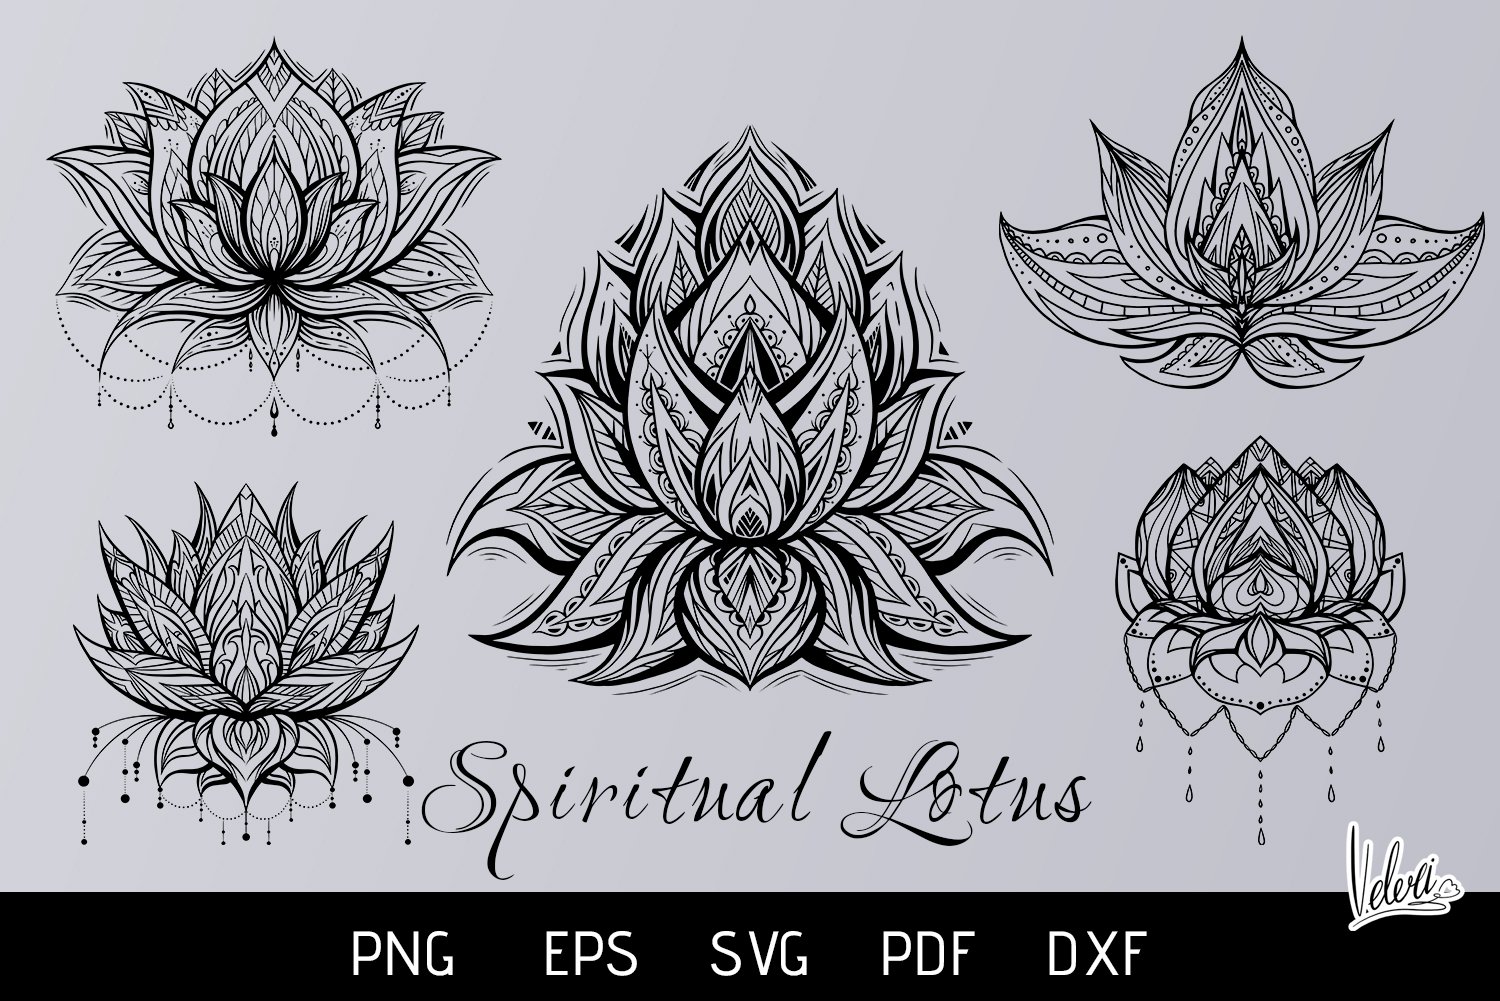 Spiritual Lotus 5 variations